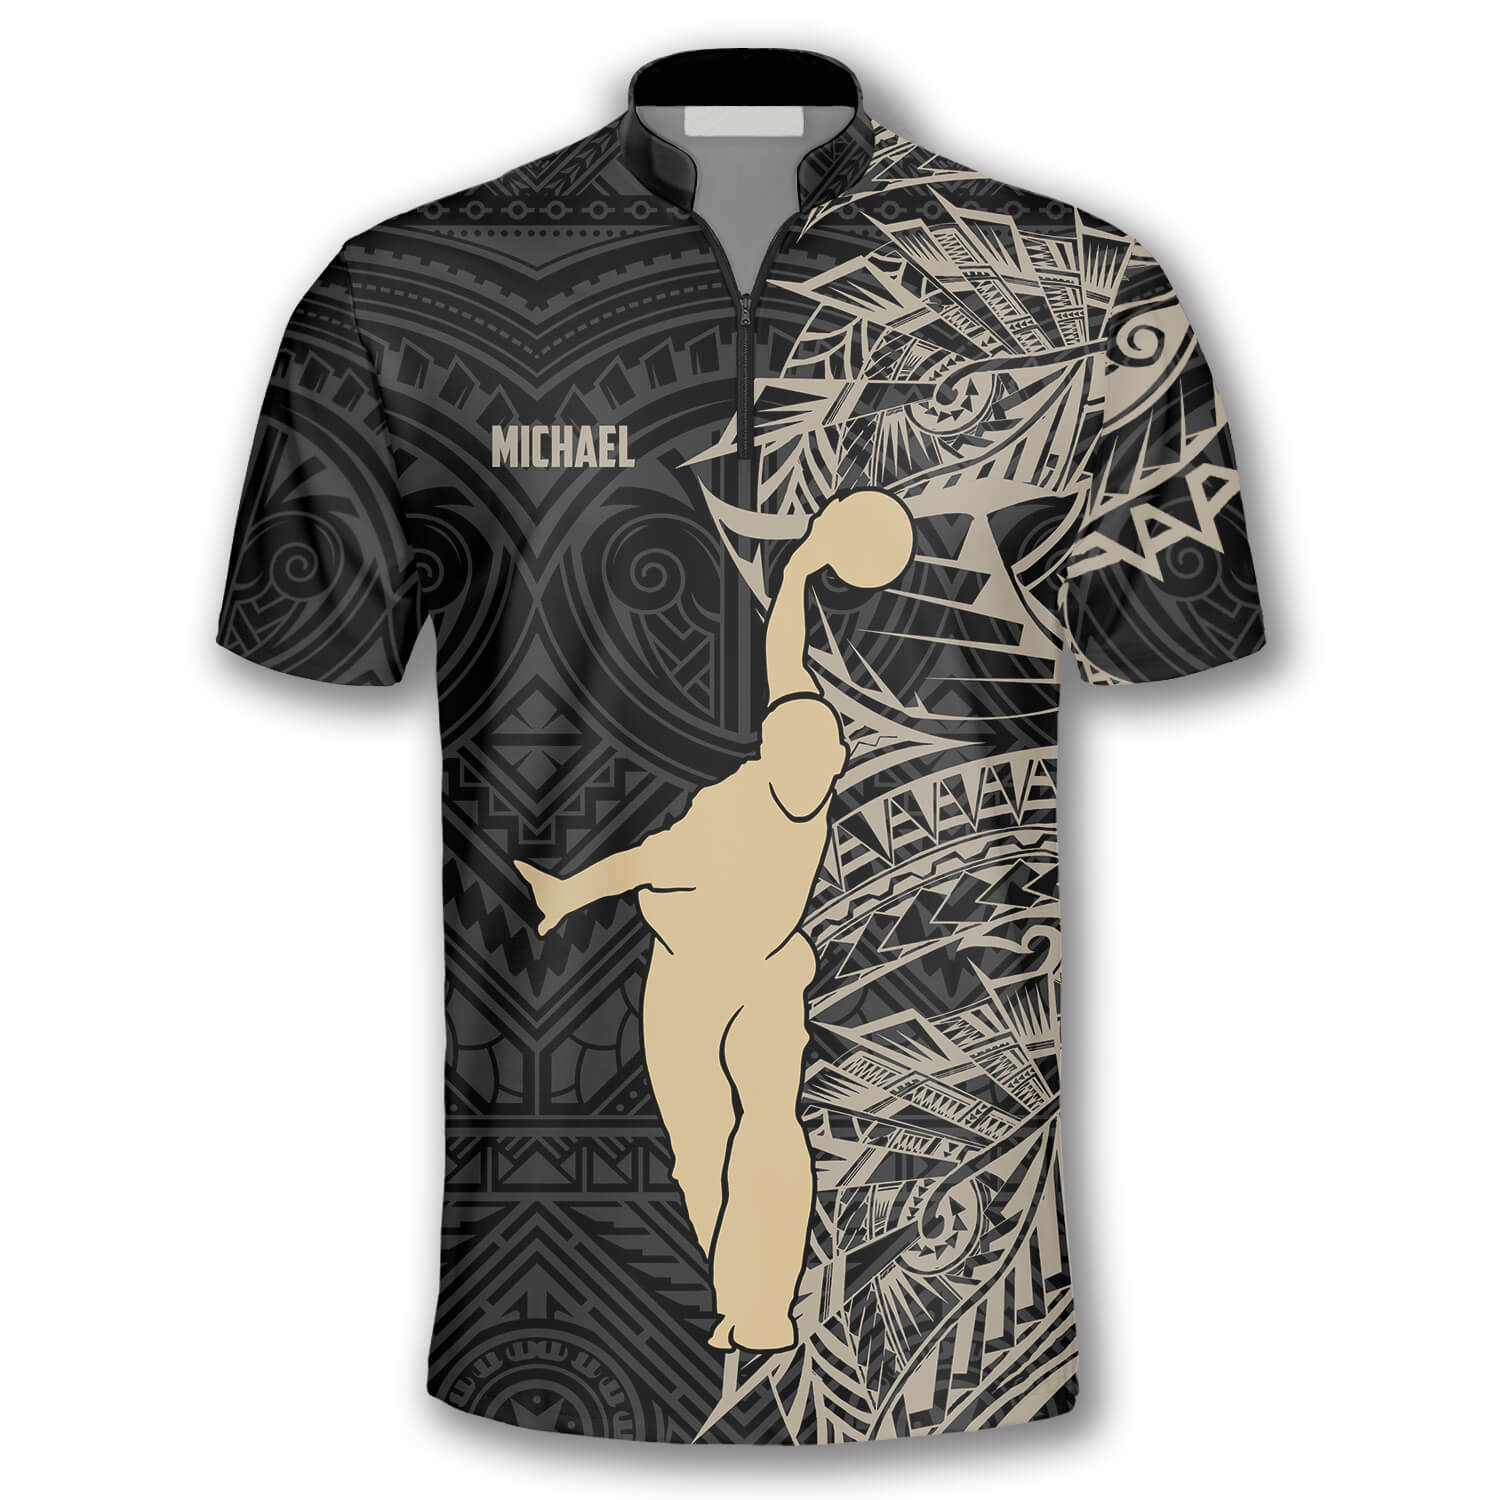 Apricot Bowling Player Custom Bowling Jerseys for Men/ Tribal Bowling Shirt/ Custom Bowling Shirt